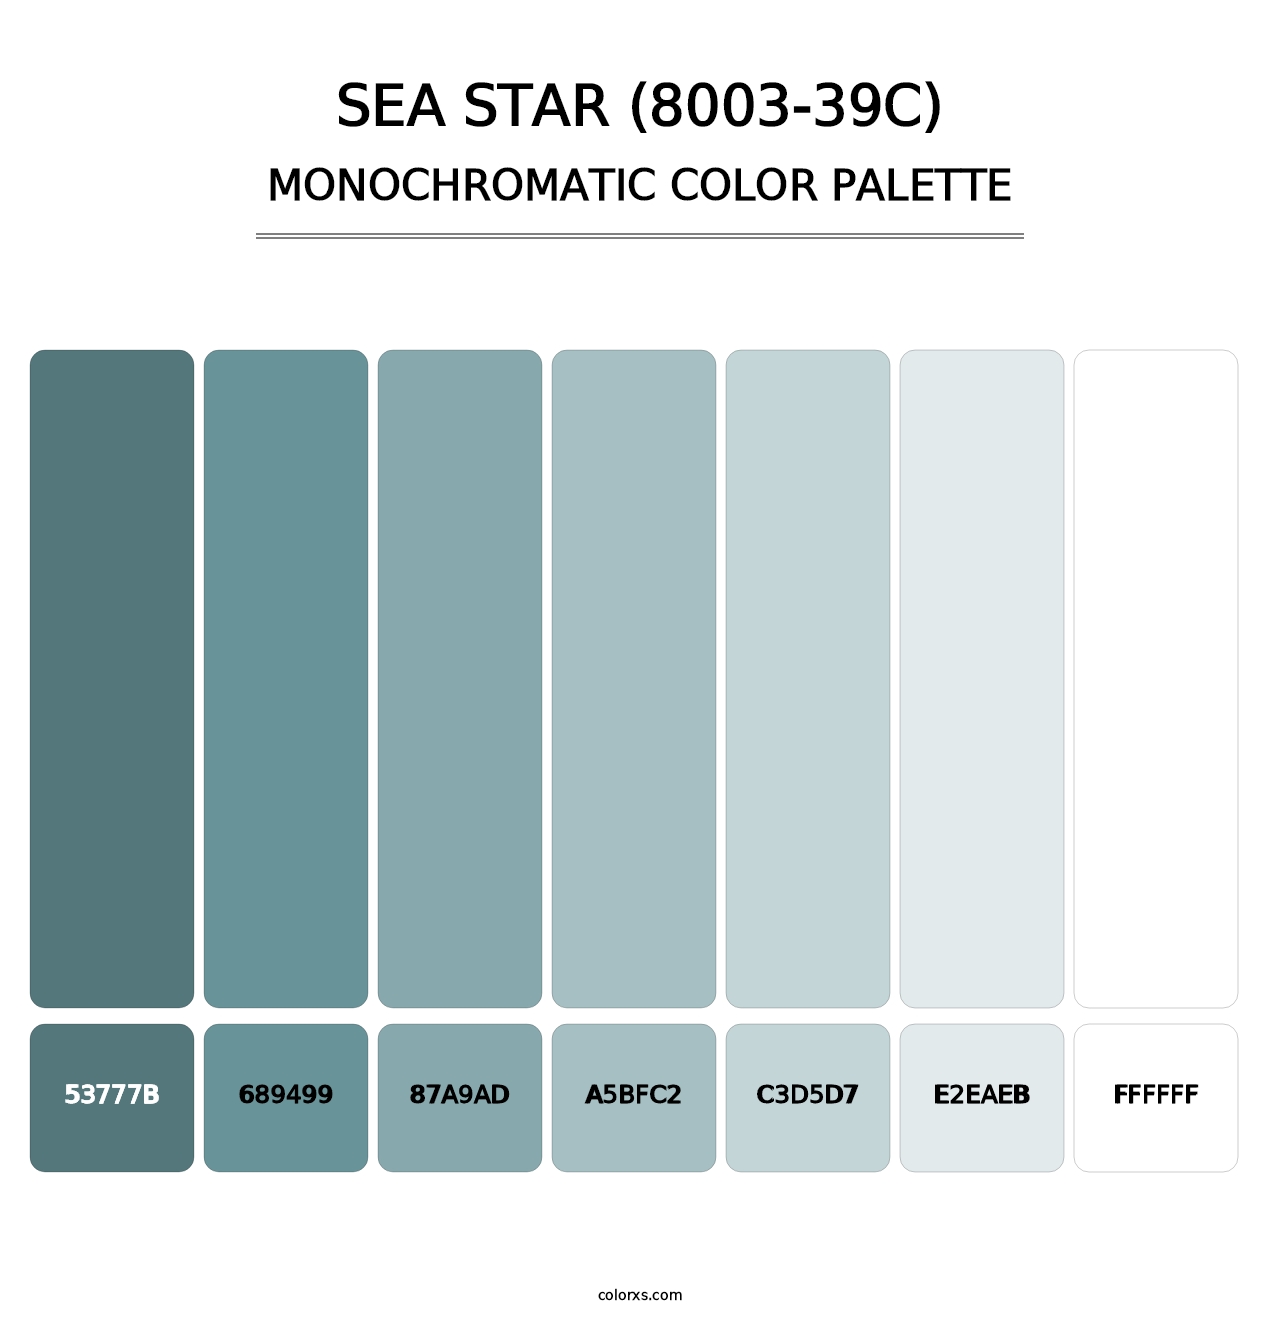 Sea Star (8003-39C) - Monochromatic Color Palette